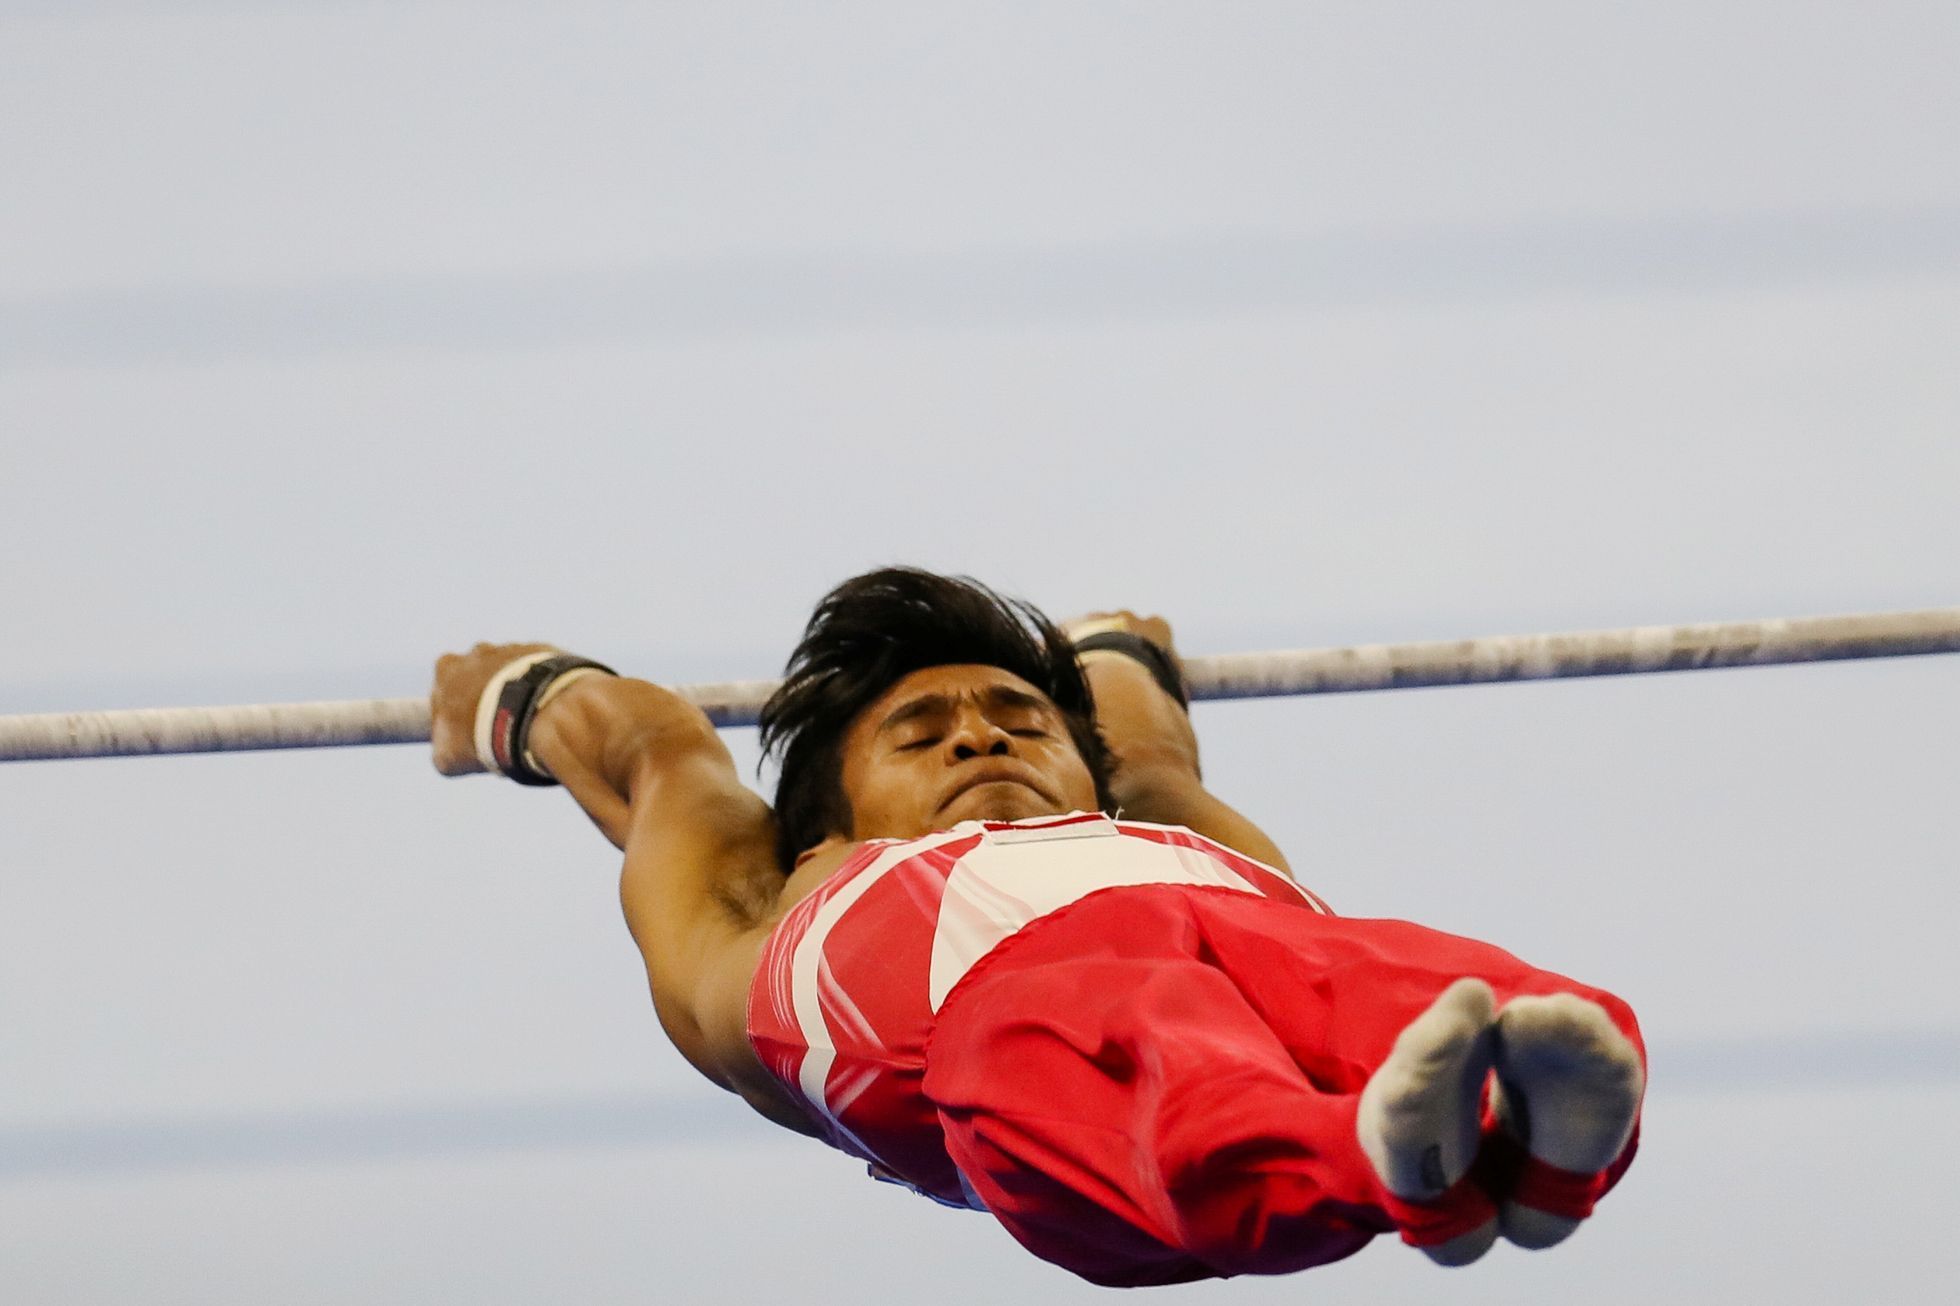 Hry Jihovýchodní Asie 2020: sportovní gymnastika